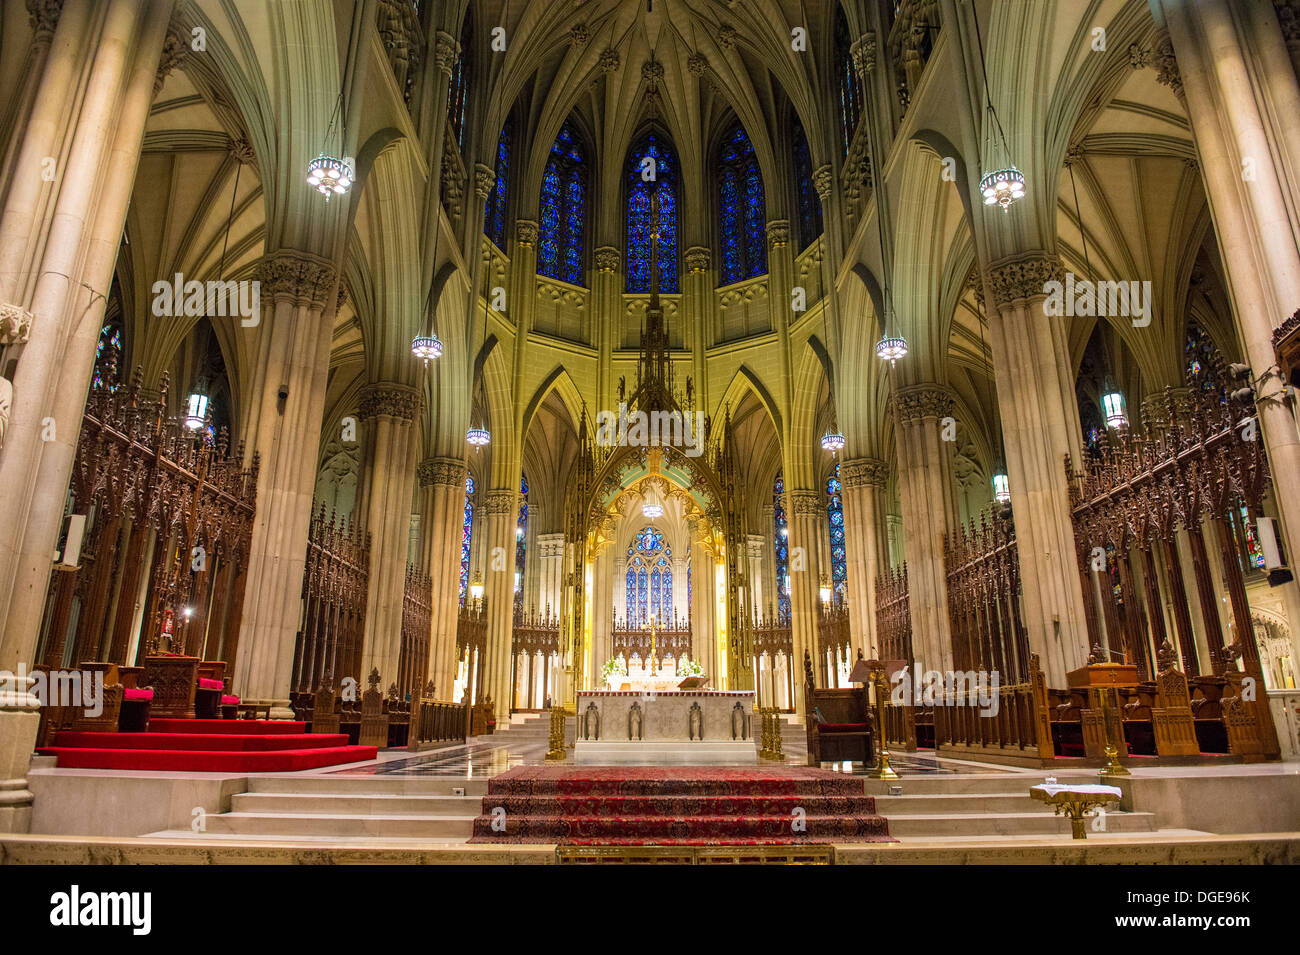 Intérieur de la Cathédrale St Patrick, un style néogothique cathédrale catholique romaine de la ville de New York. Banque D'Images